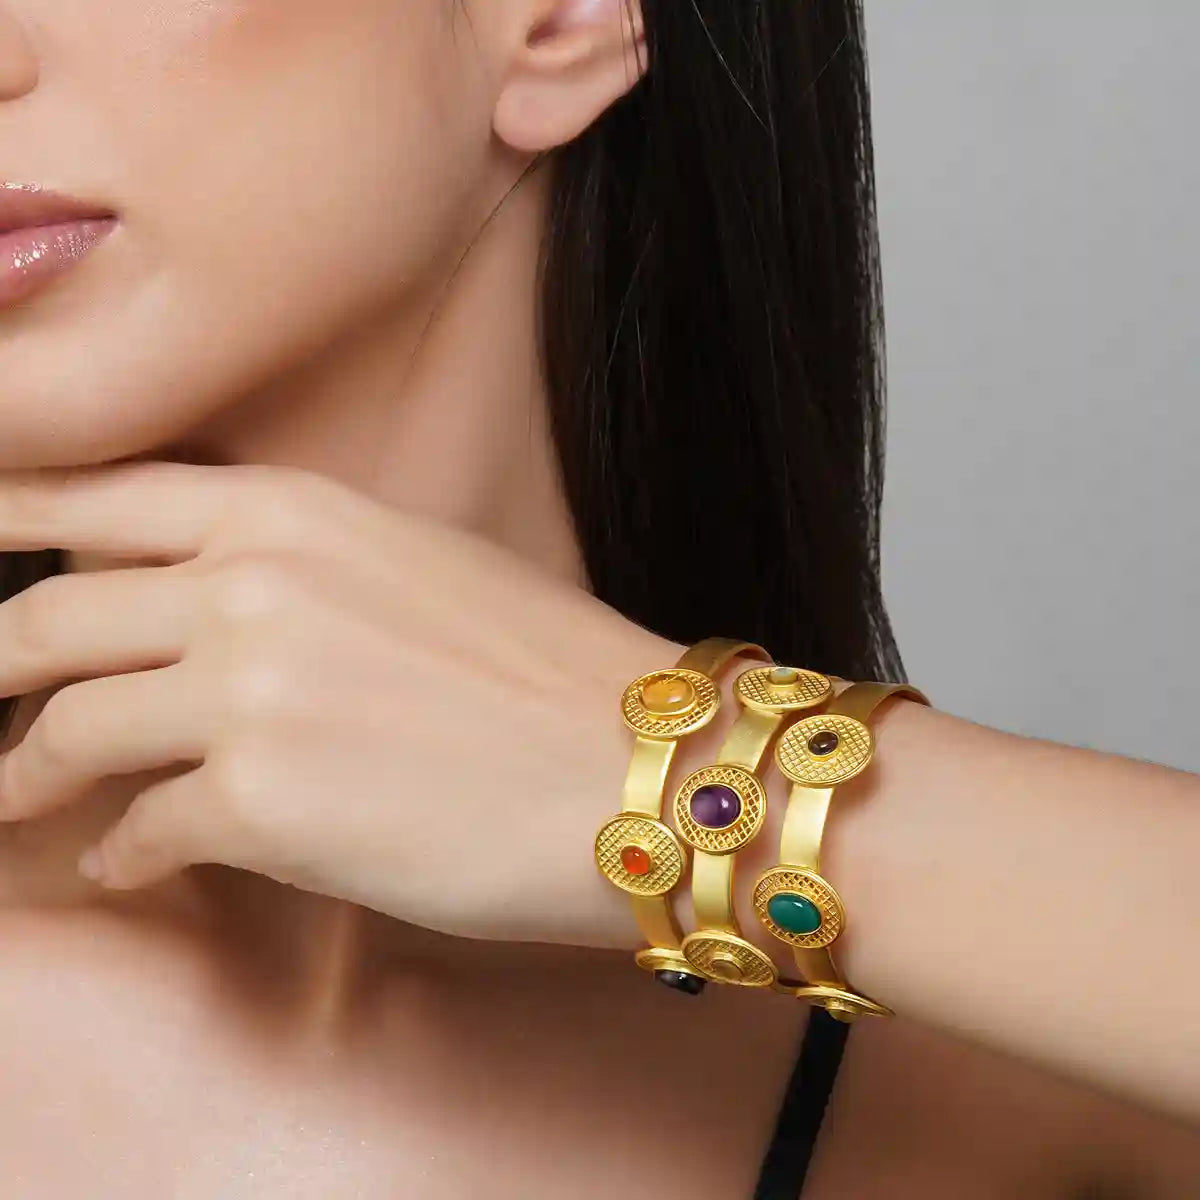 Women Cuff Bracelet - Buy Women Cuff Bracelet online in India